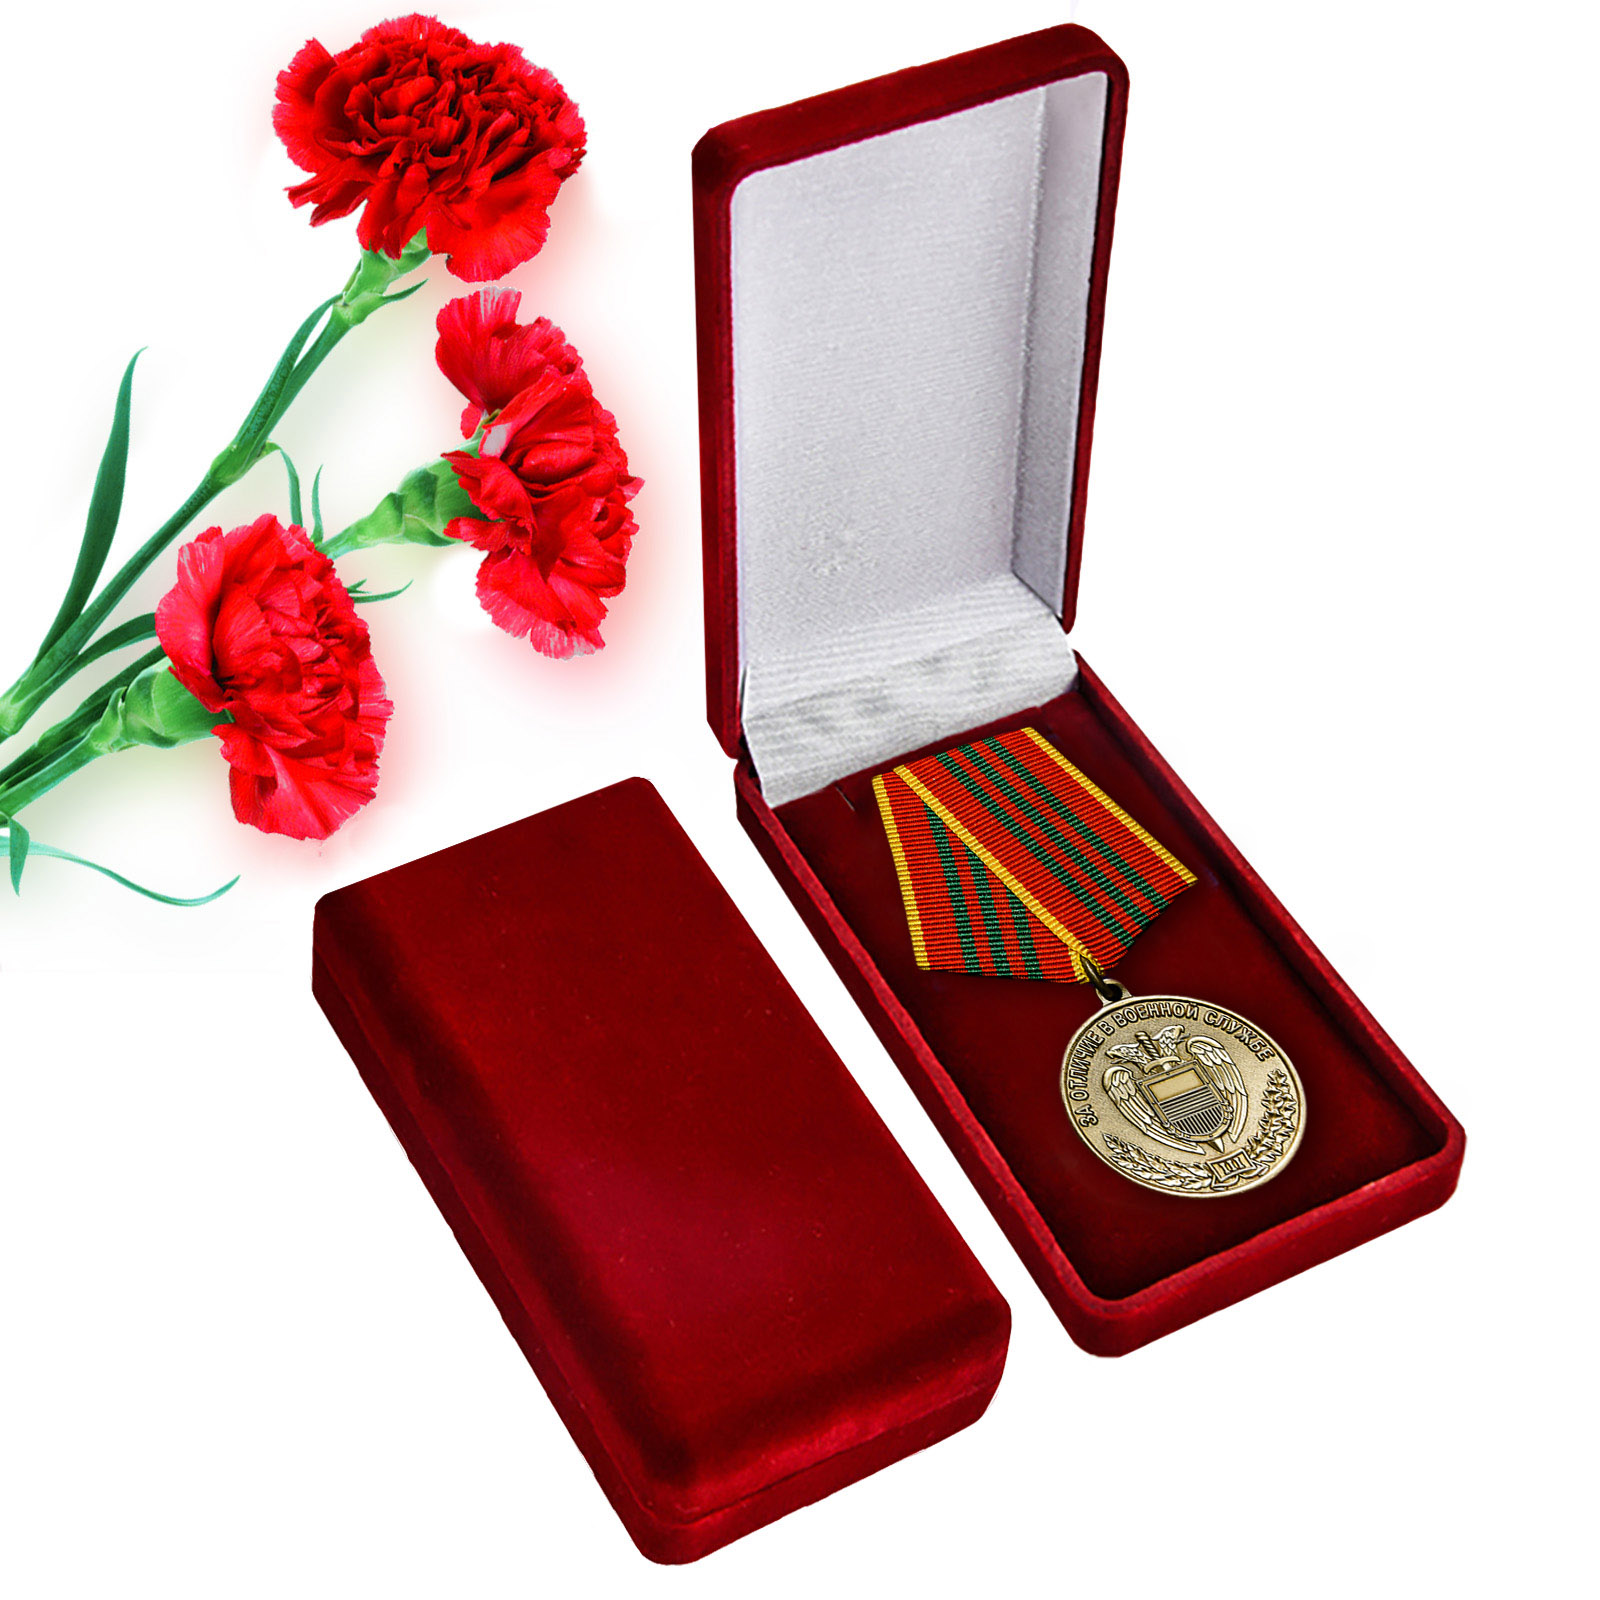 Купить ведомственную медаль ФСО "За отличие в военной службе" 3 степени оптом или в розницу